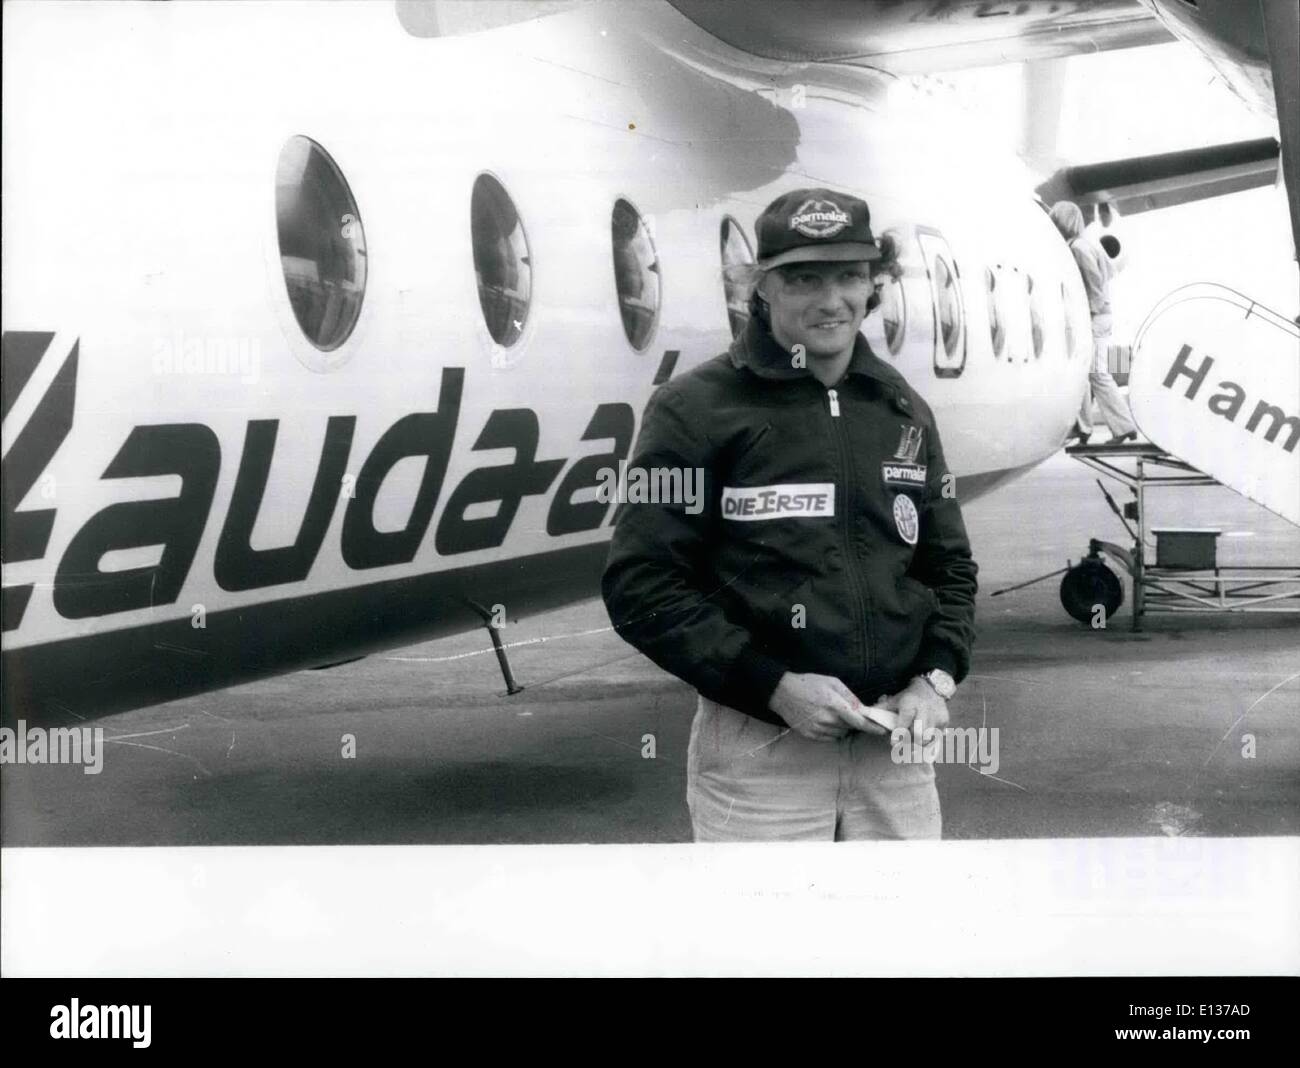 29 février 2012 - Niki Lauda a ouvert Air-Route Hambourg/Allemagne de l'Ouest - Klagenfurt/Autriche par son Lauda-Air-entreprise qu'il est un homme qui aime la vitesse : c'est bien connues - et Niki Lauda a démontré ce toujours dans le passé du temps ! Mais l'ex-World-Champion dans la formule que j'aime la rapidité non seulement sur le terrain, mais aussi dans l'air. Par la présente, le coureur autrichien a fondé une compagnie aérienne et maintenant il a personnellement a ouvert la nouvelle route Hambourg/Allemagne de l'Ouest - Klagenfurt/ Autriche par le ''Fokker 27'' (avec 44 sièges) de la ''Laude-Air'' Banque D'Images